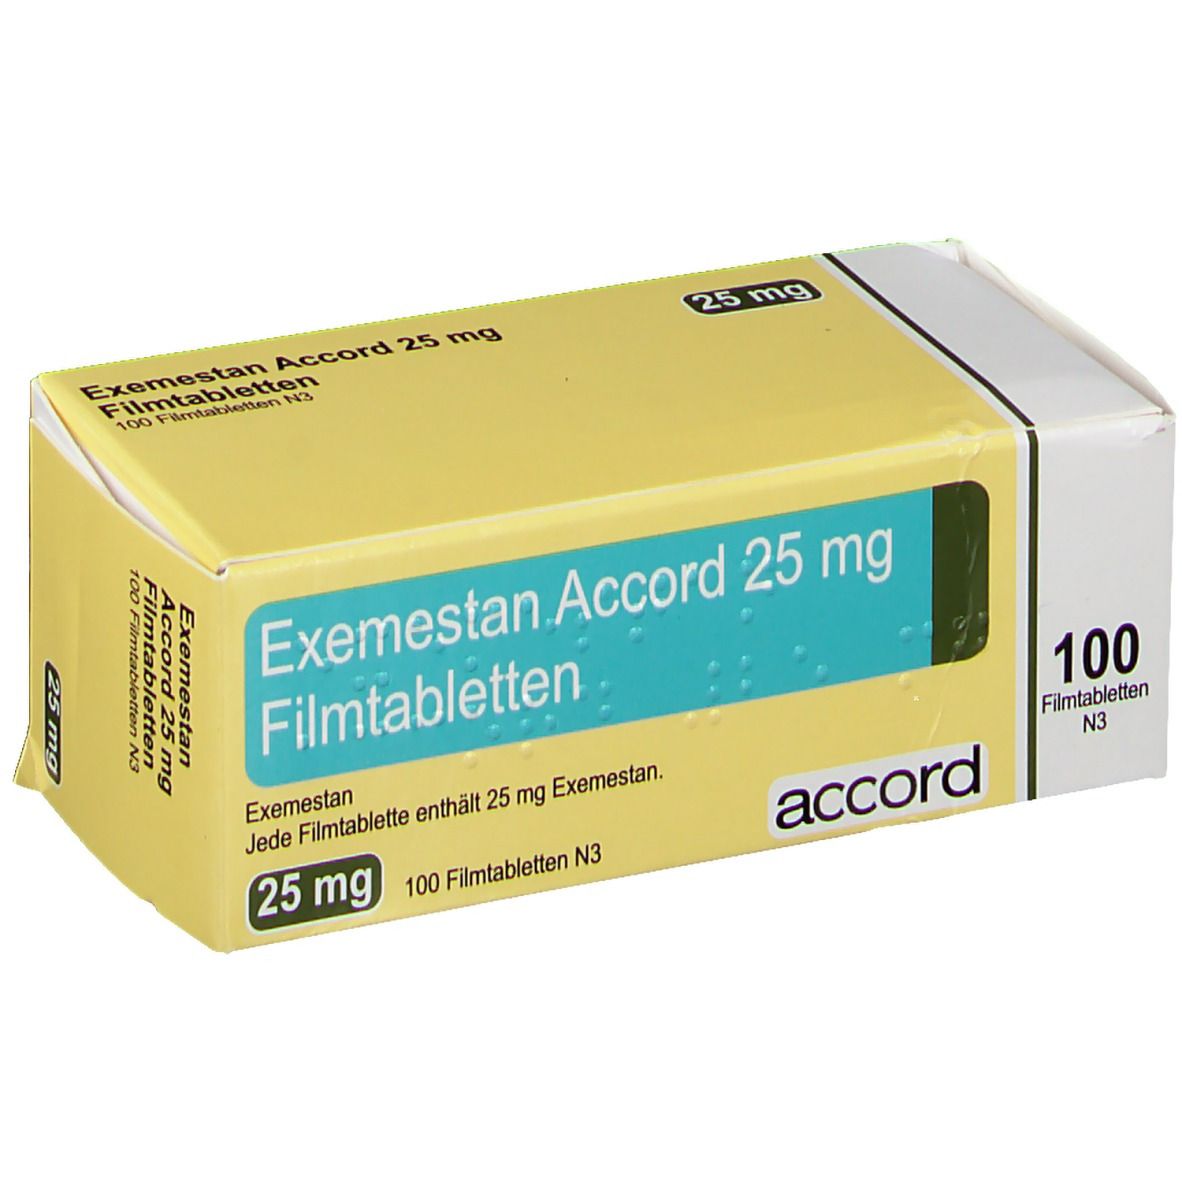 testosteron tabletten 2.0 - Der nächste Schritt